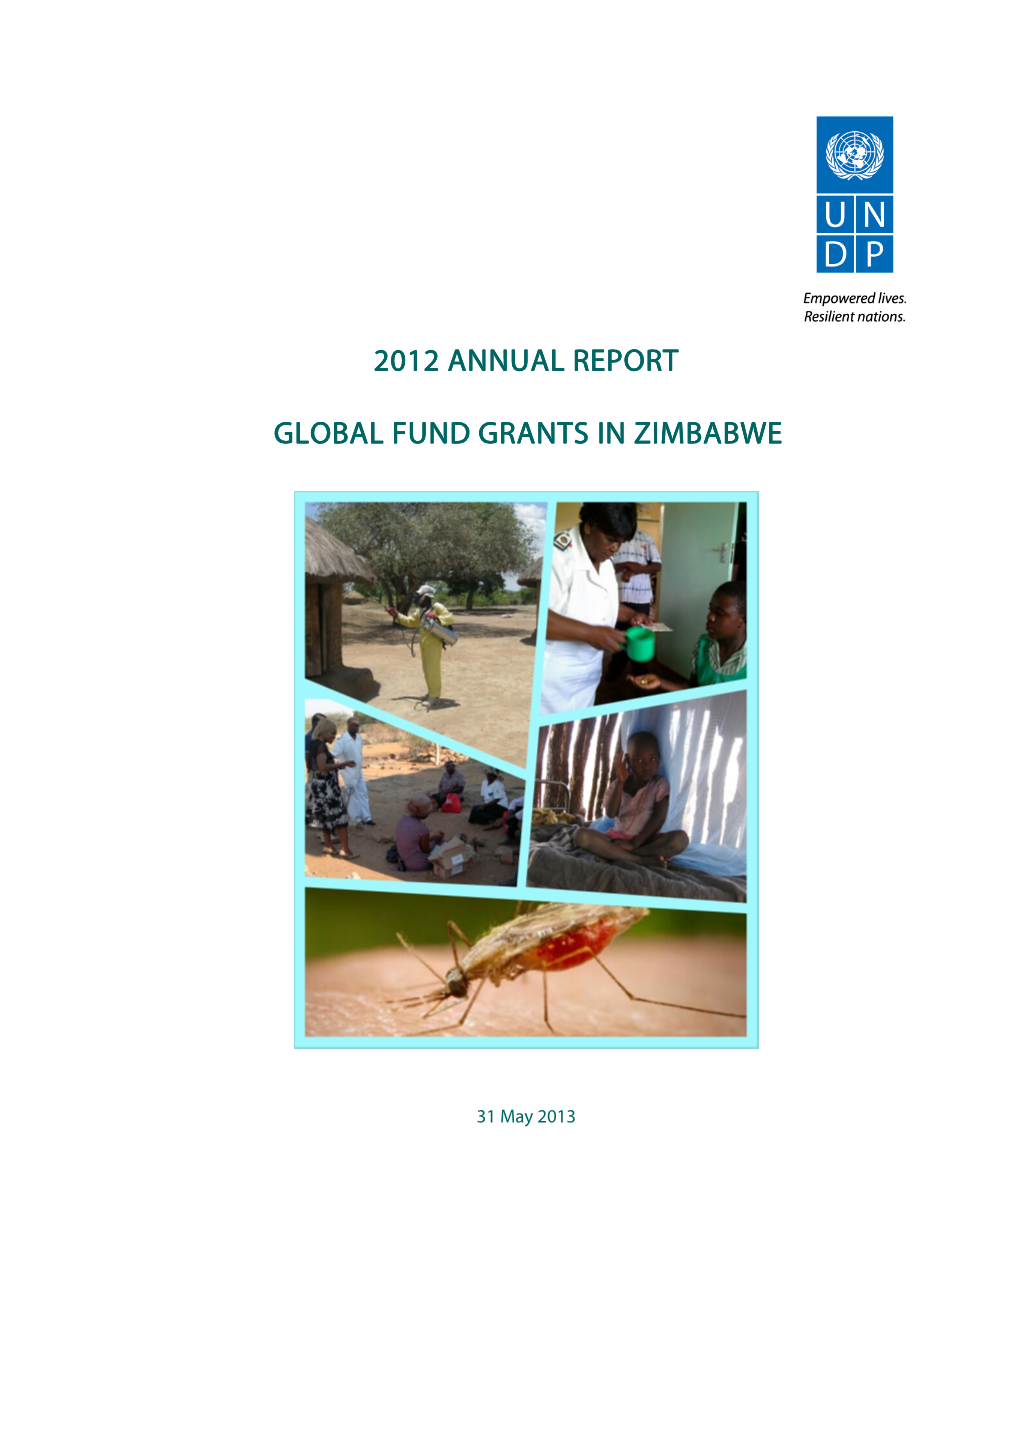 Annual Report Malaria Grant, Global Fund Grants